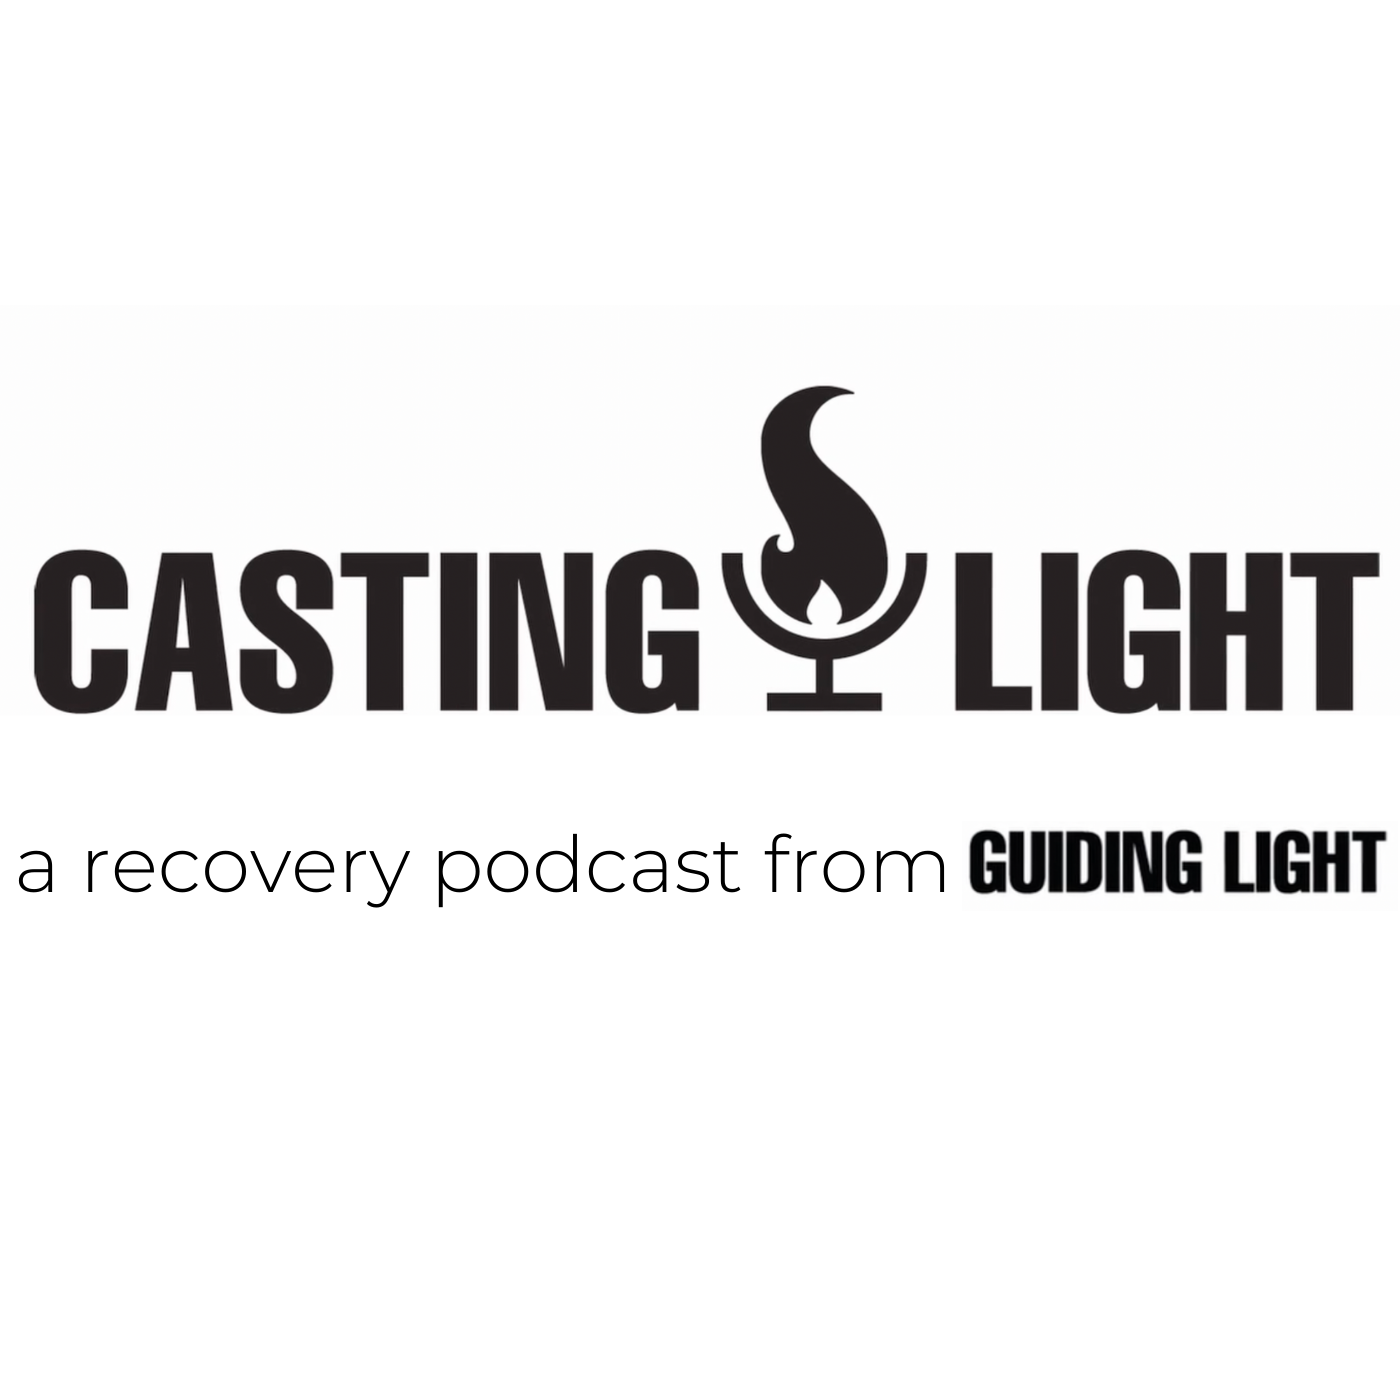 Artwork for podcast Casting Light